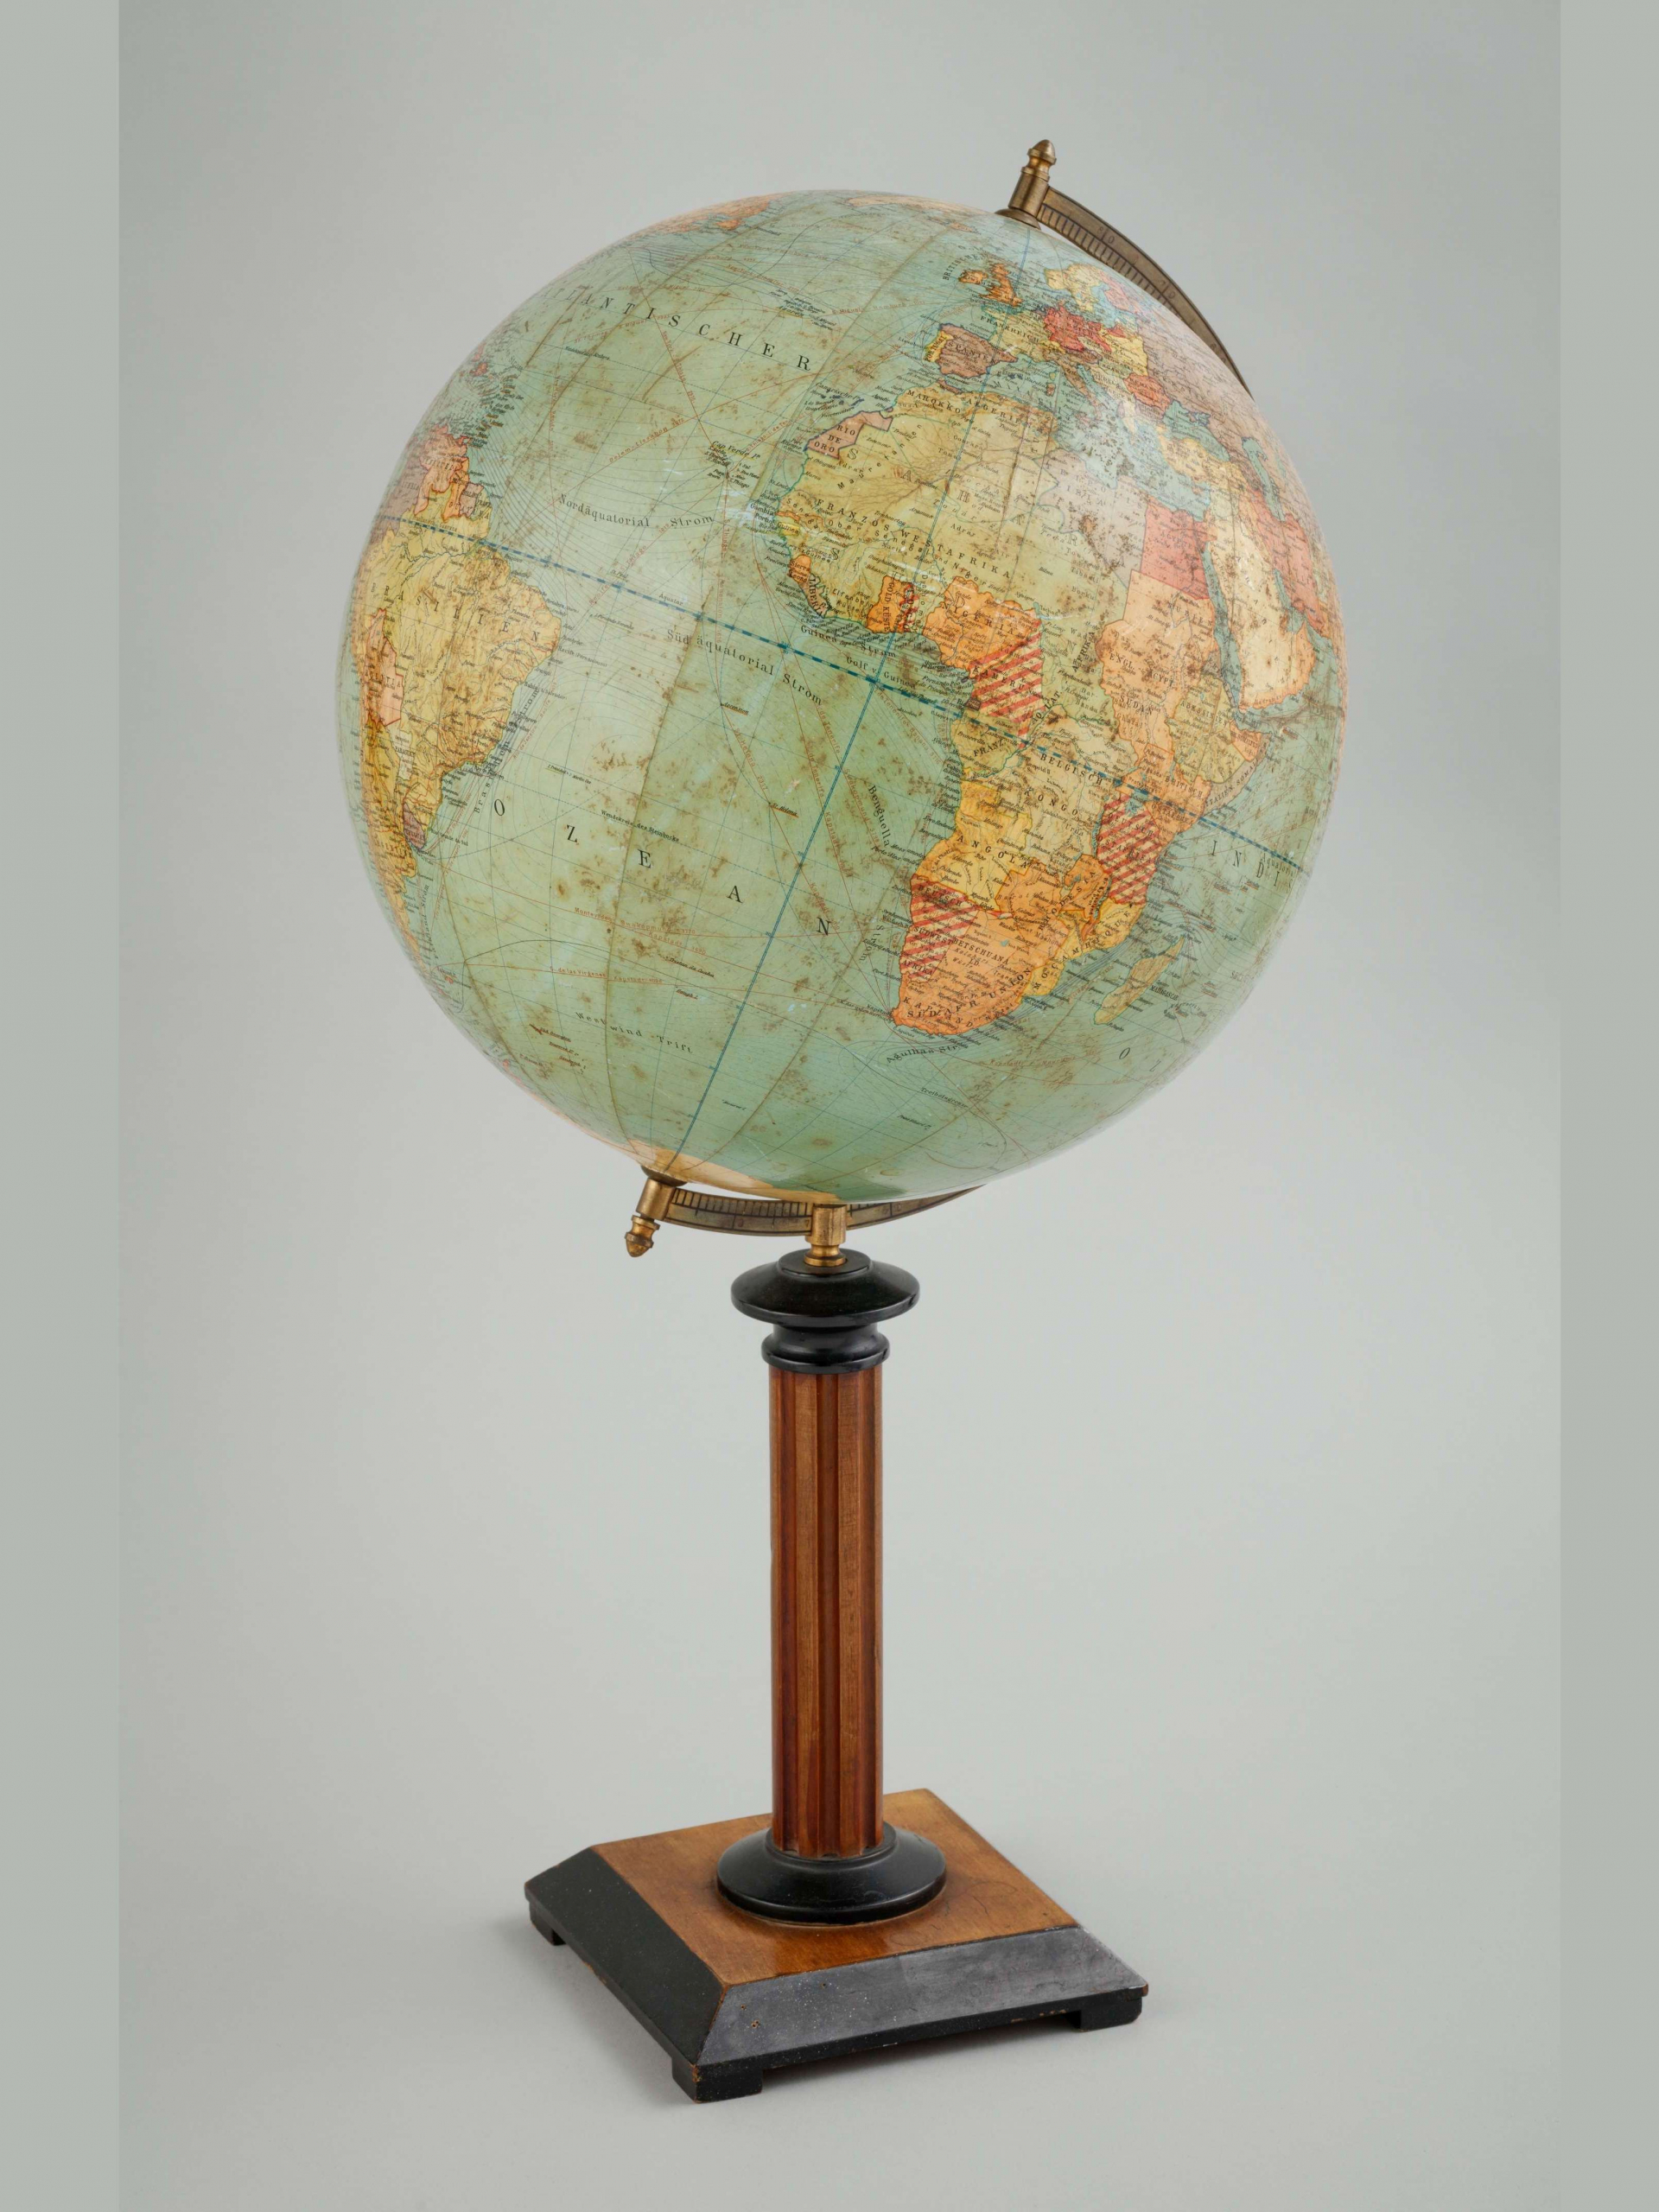 Erdglobus, terrestrial globe, Reimer